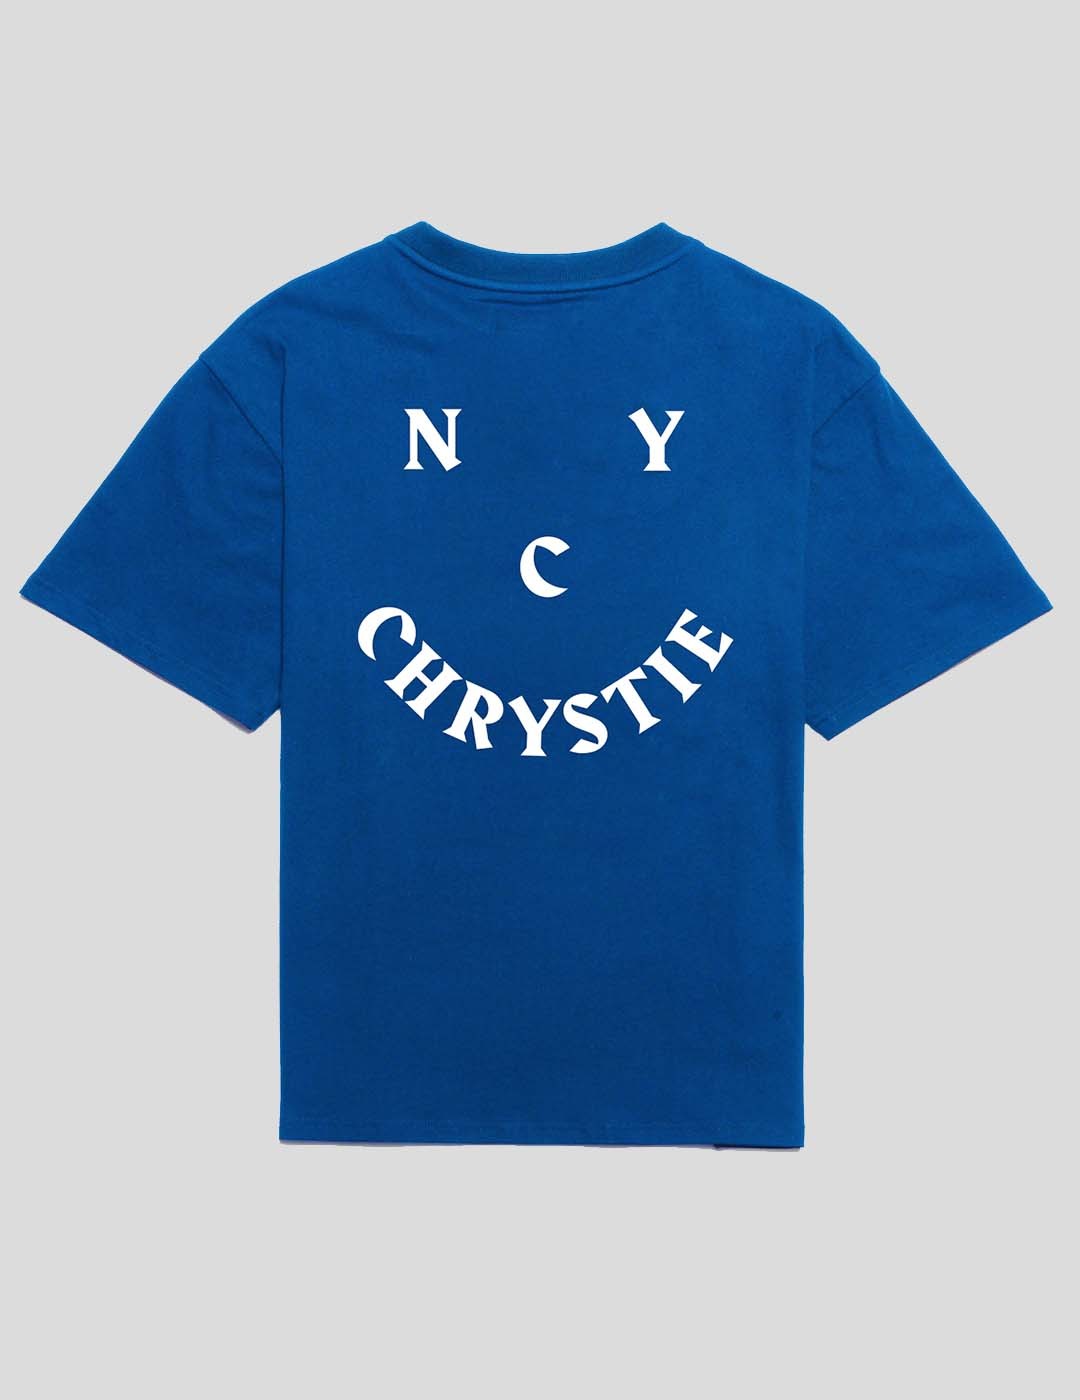 CAMISETA CHRYSTIE NYC SMILE LOGO TEE ROYAL BLUE